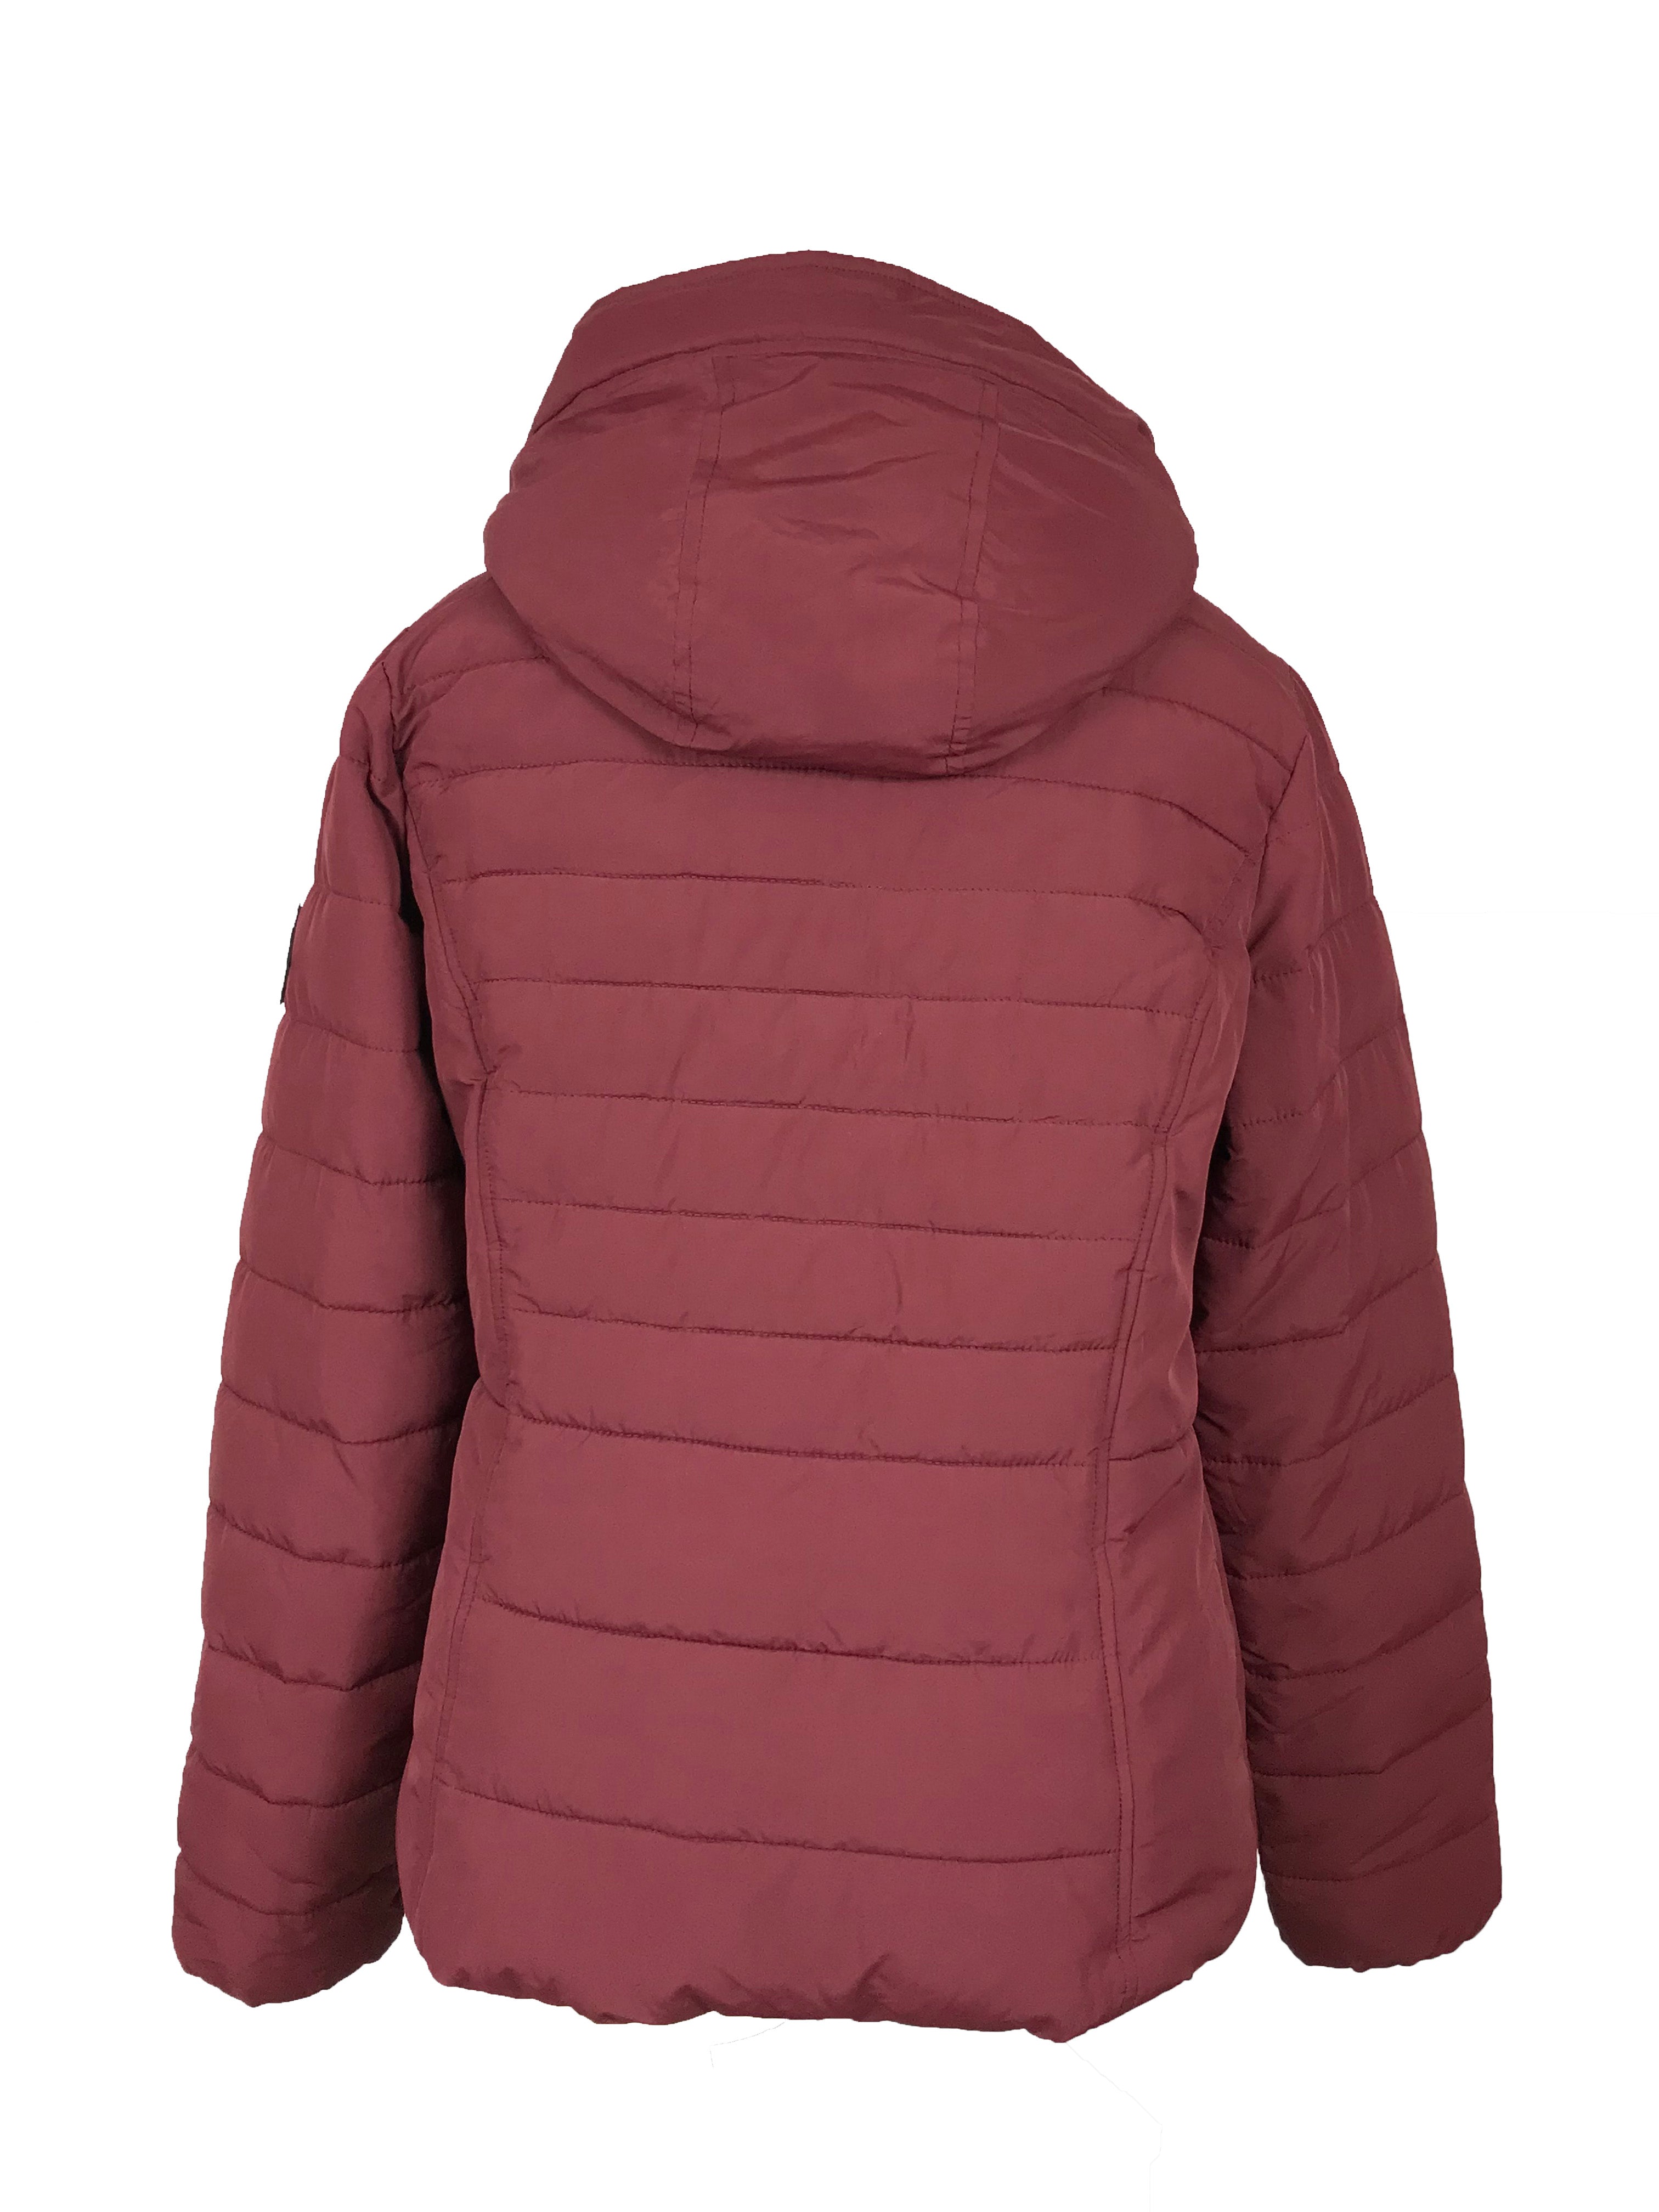 Hollister Burgundy Puffer Jacket Women's Size XL